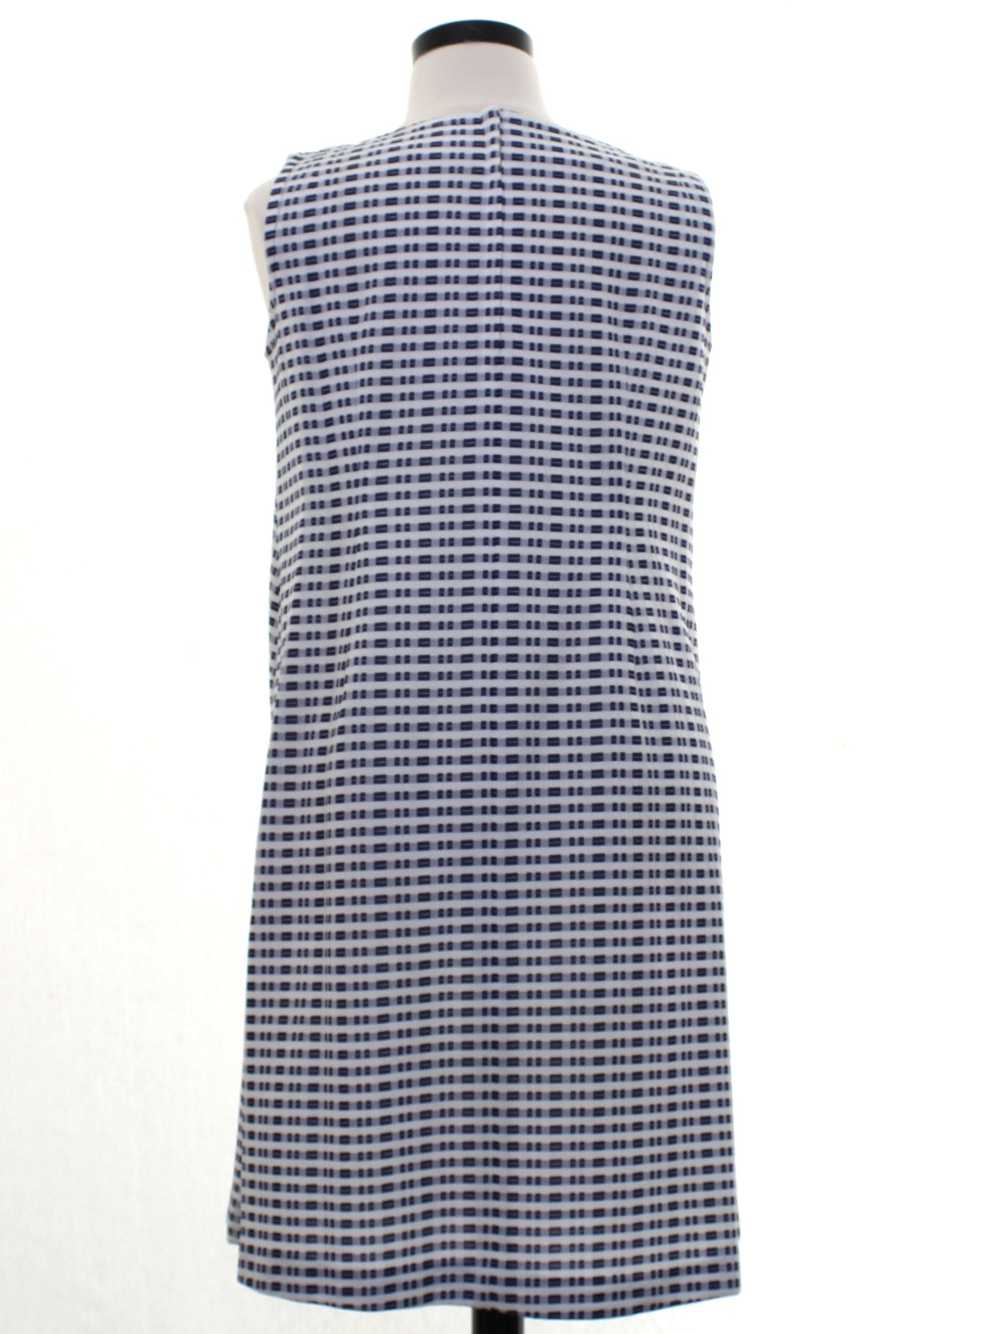 1970's A-Line Knit Dress - image 3